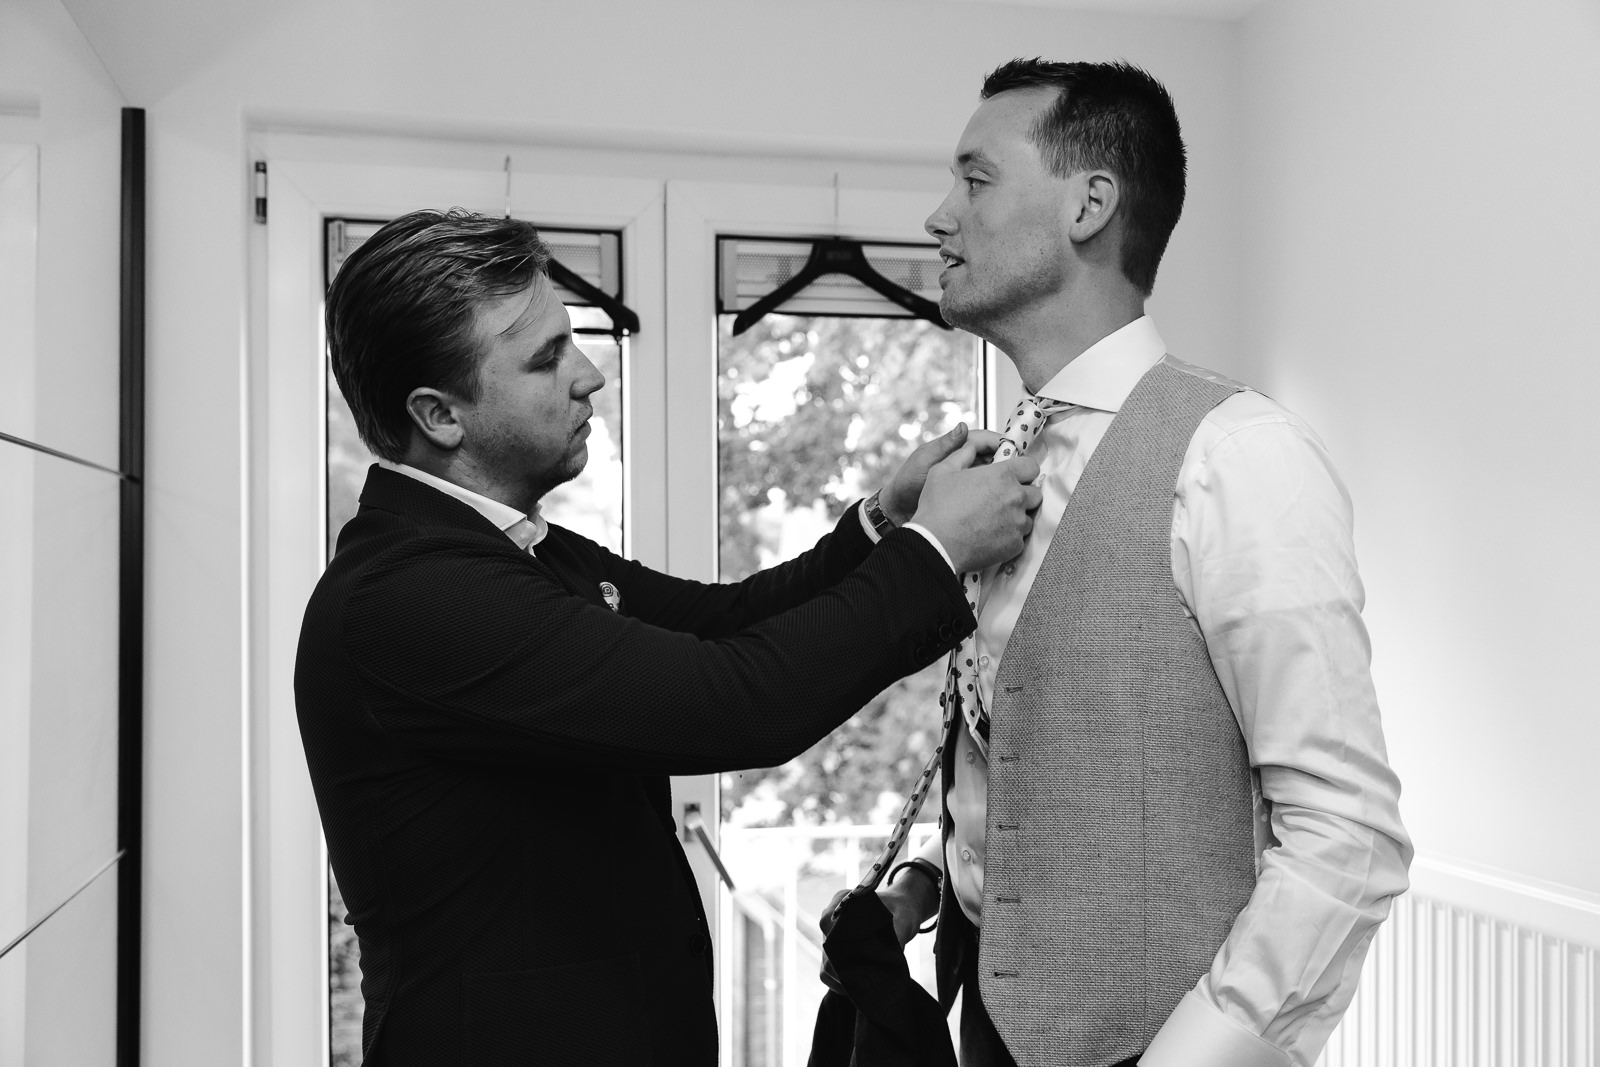 Broer helpt bruidegom met stropdas